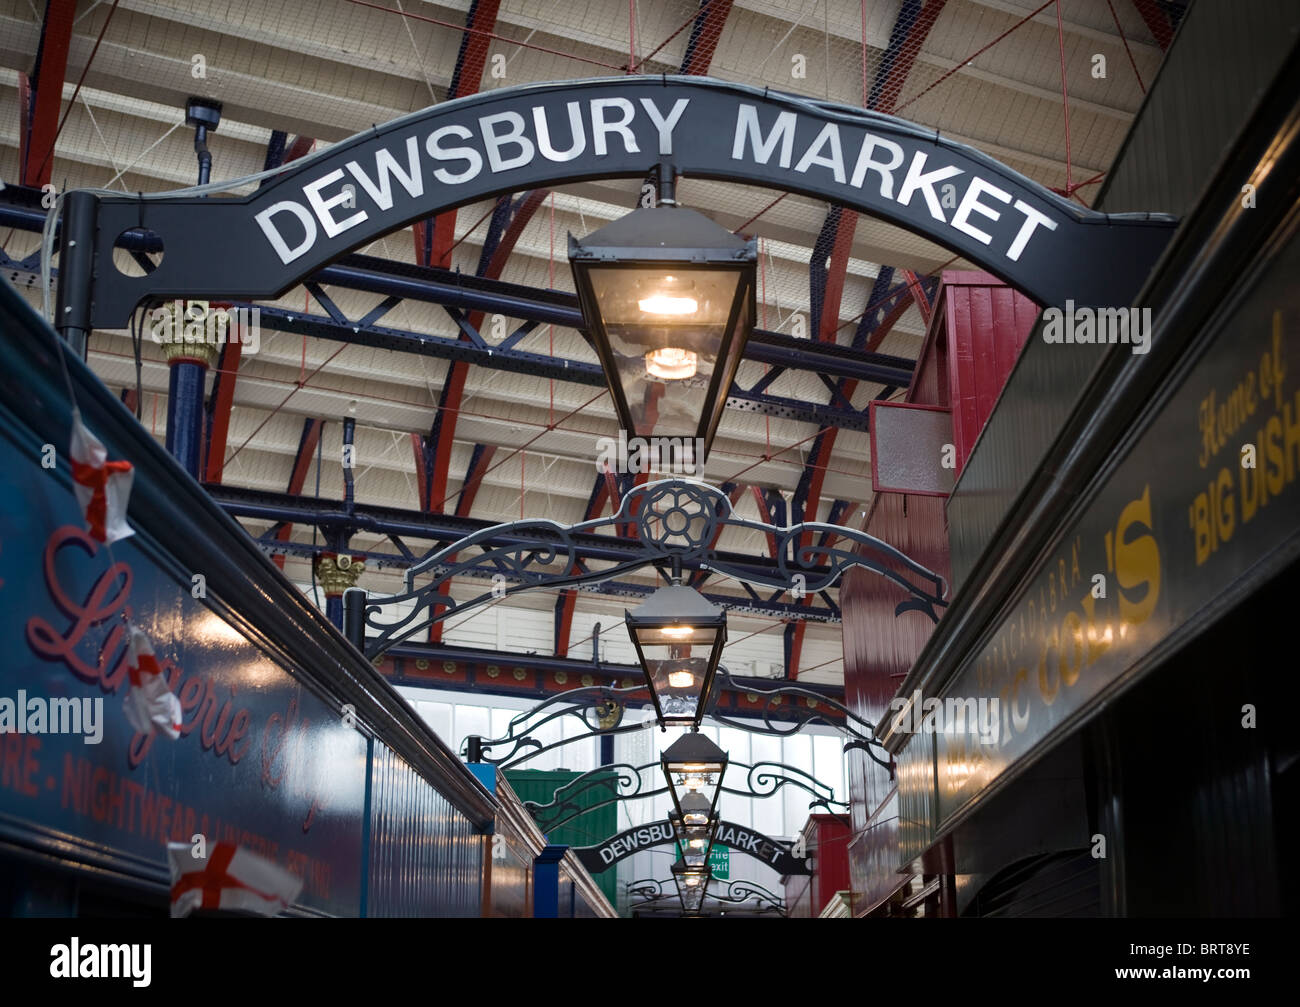 Dewsbury Market  West Yorkshire England UK Stock Photo